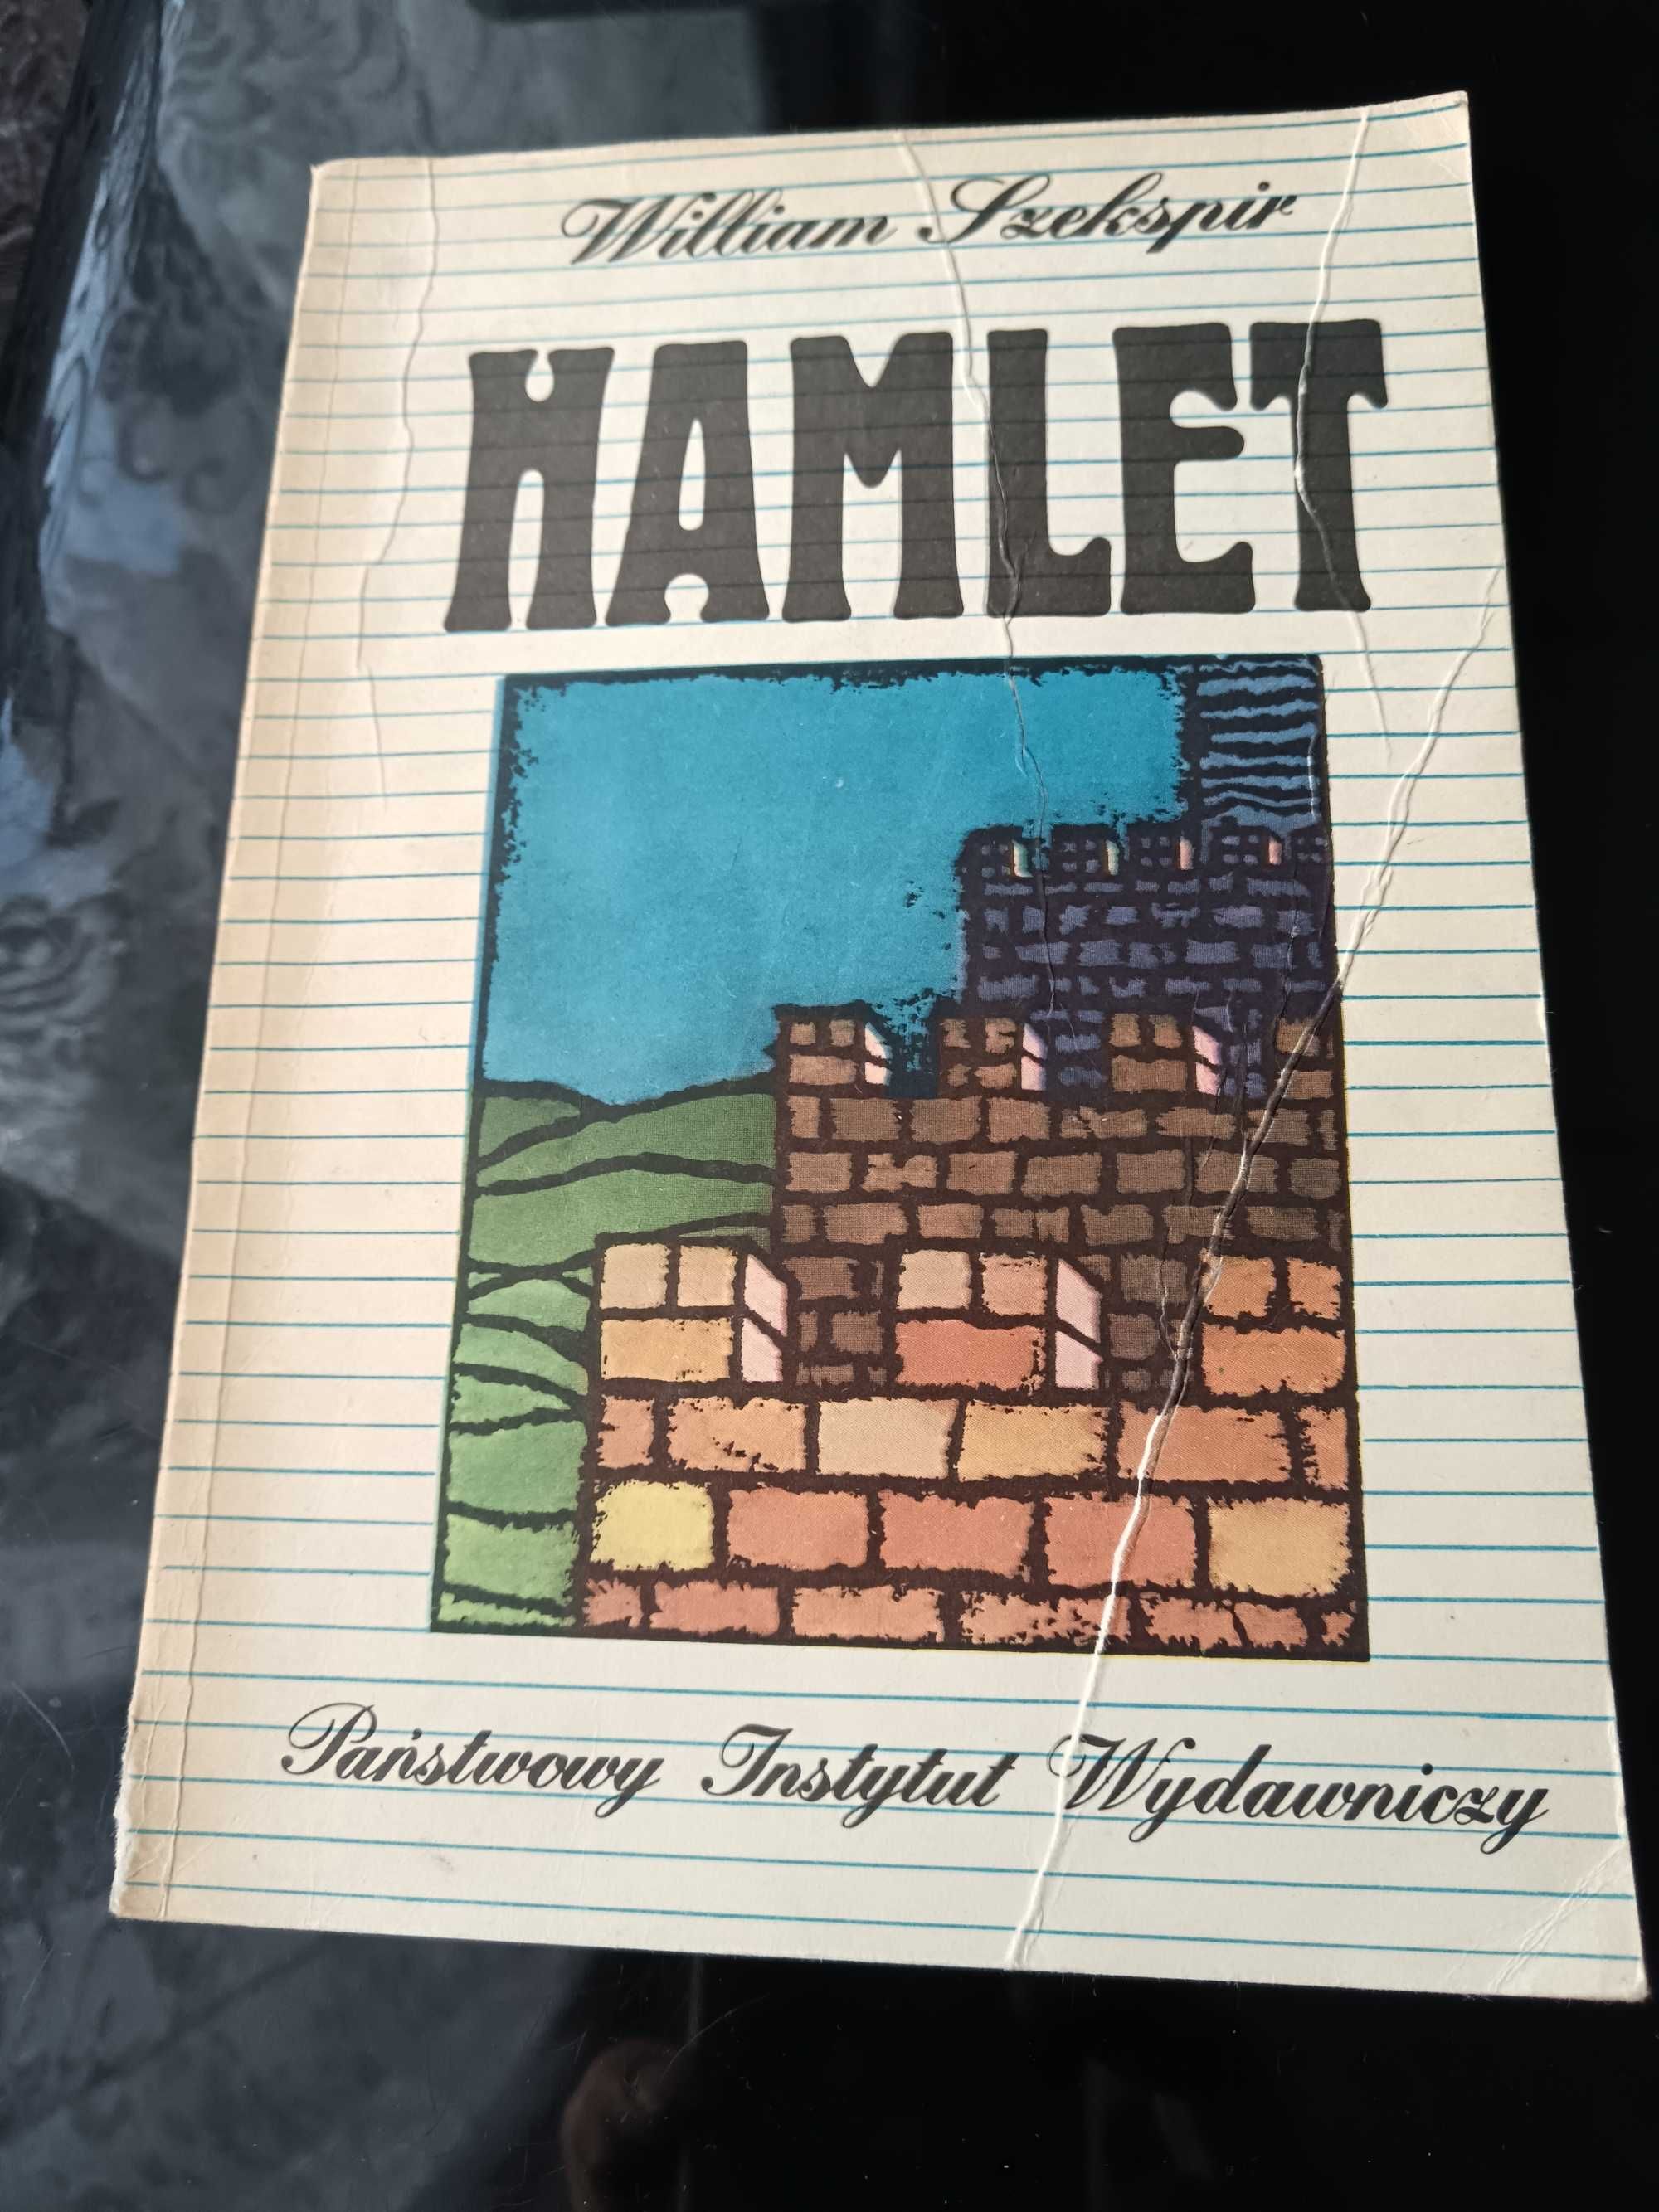 Hamlet William Szekspir